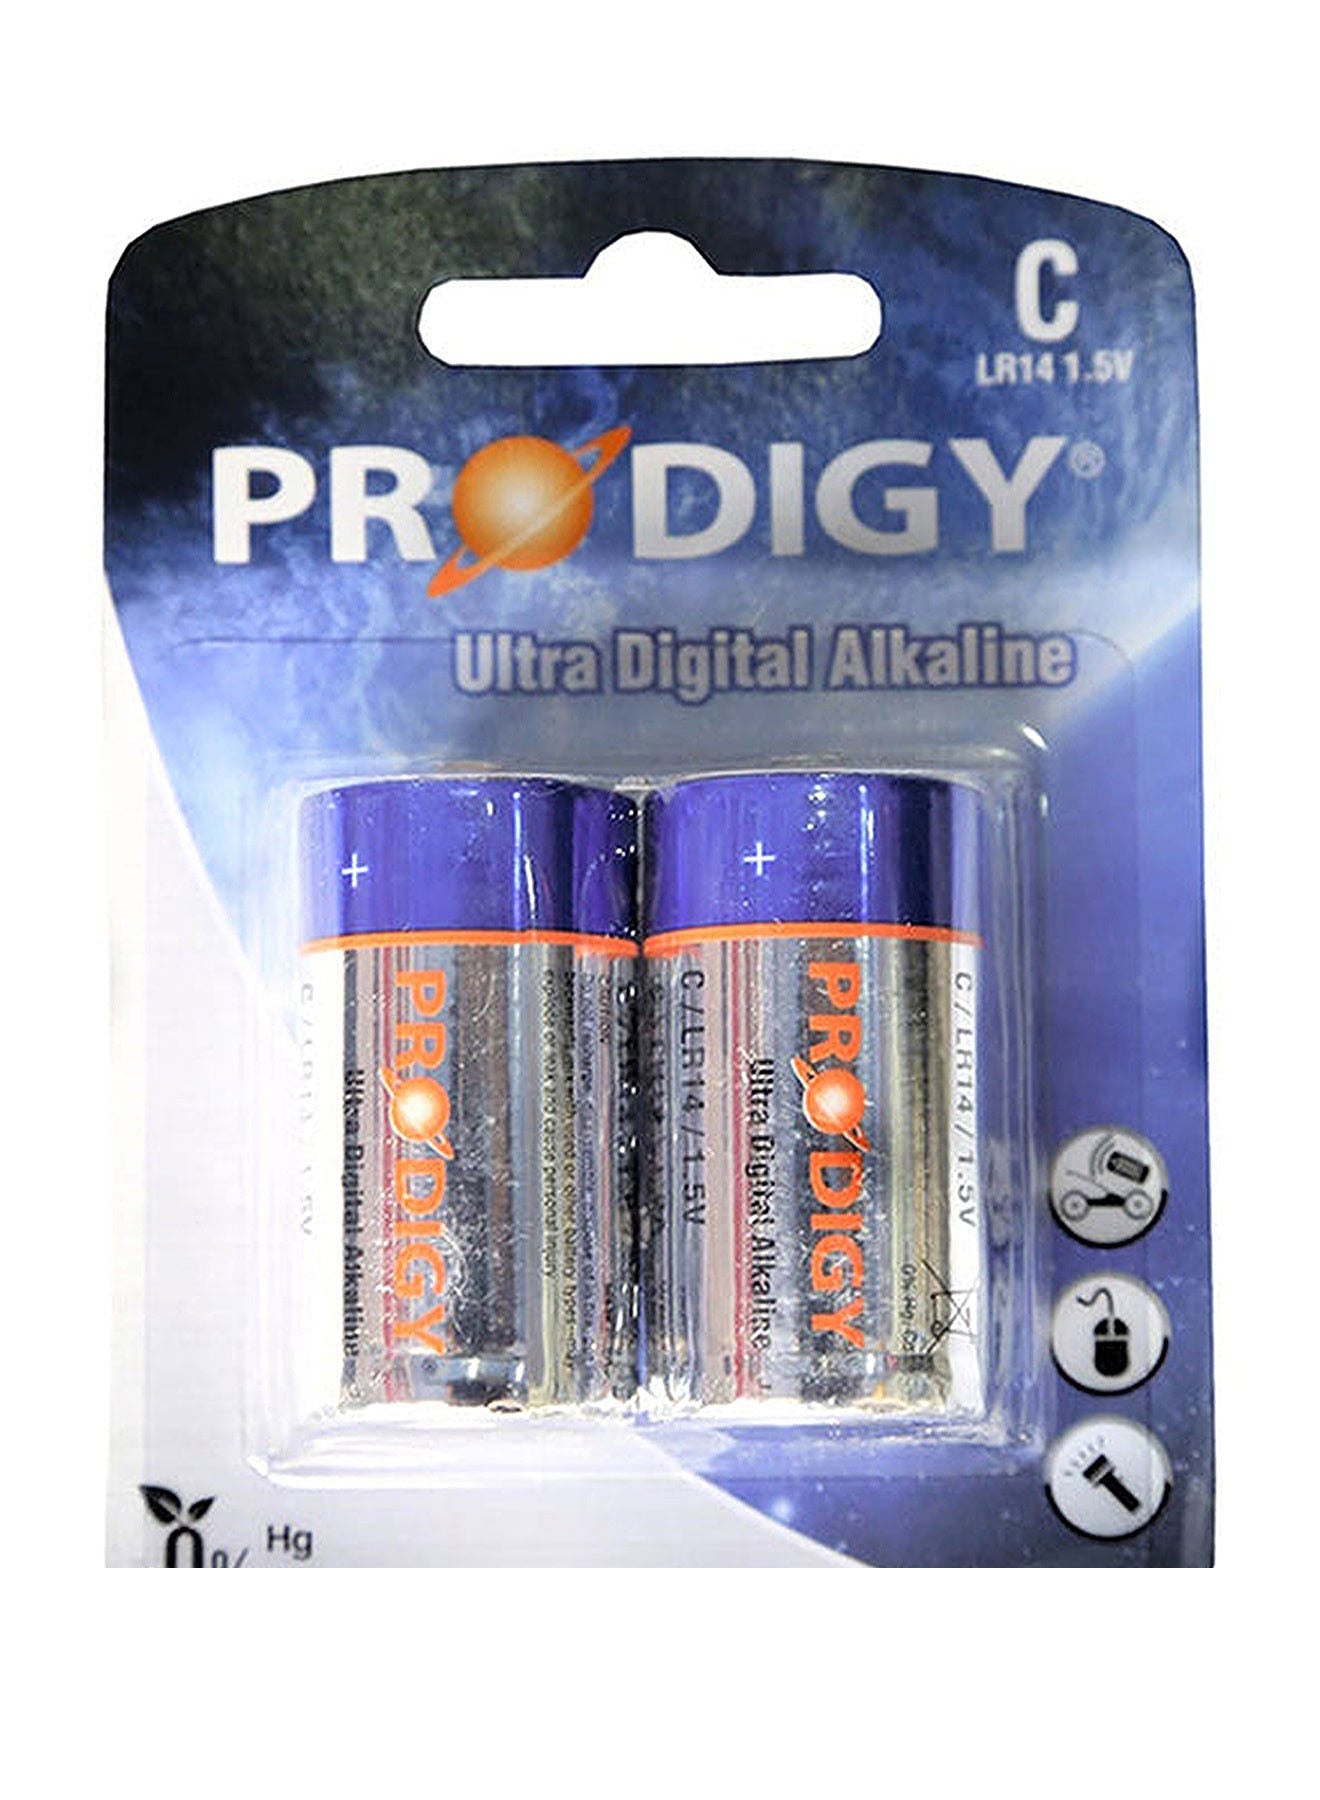 Prodigy Alkaline LR20UD 2B D2 Value Pack of 2 